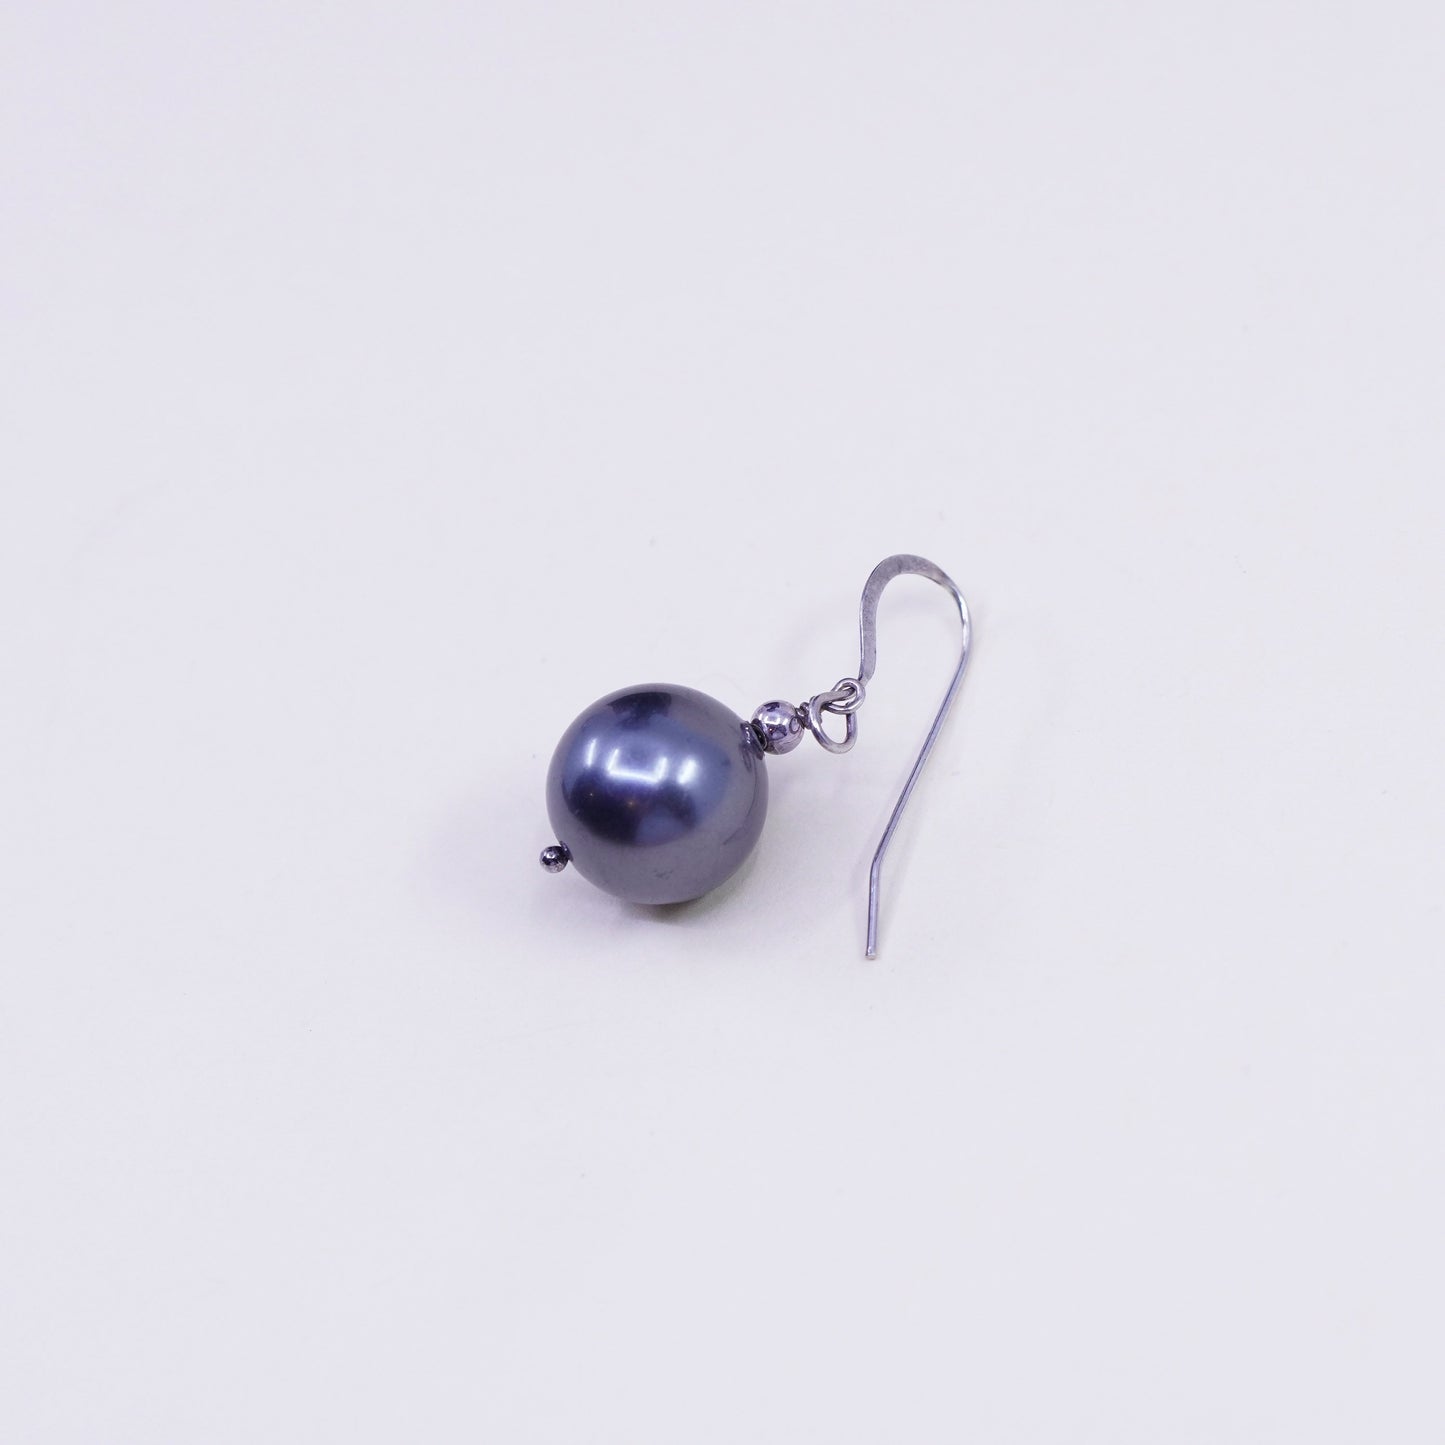 Vintage Sterling 925 silver handmade earrings with black pearl drop